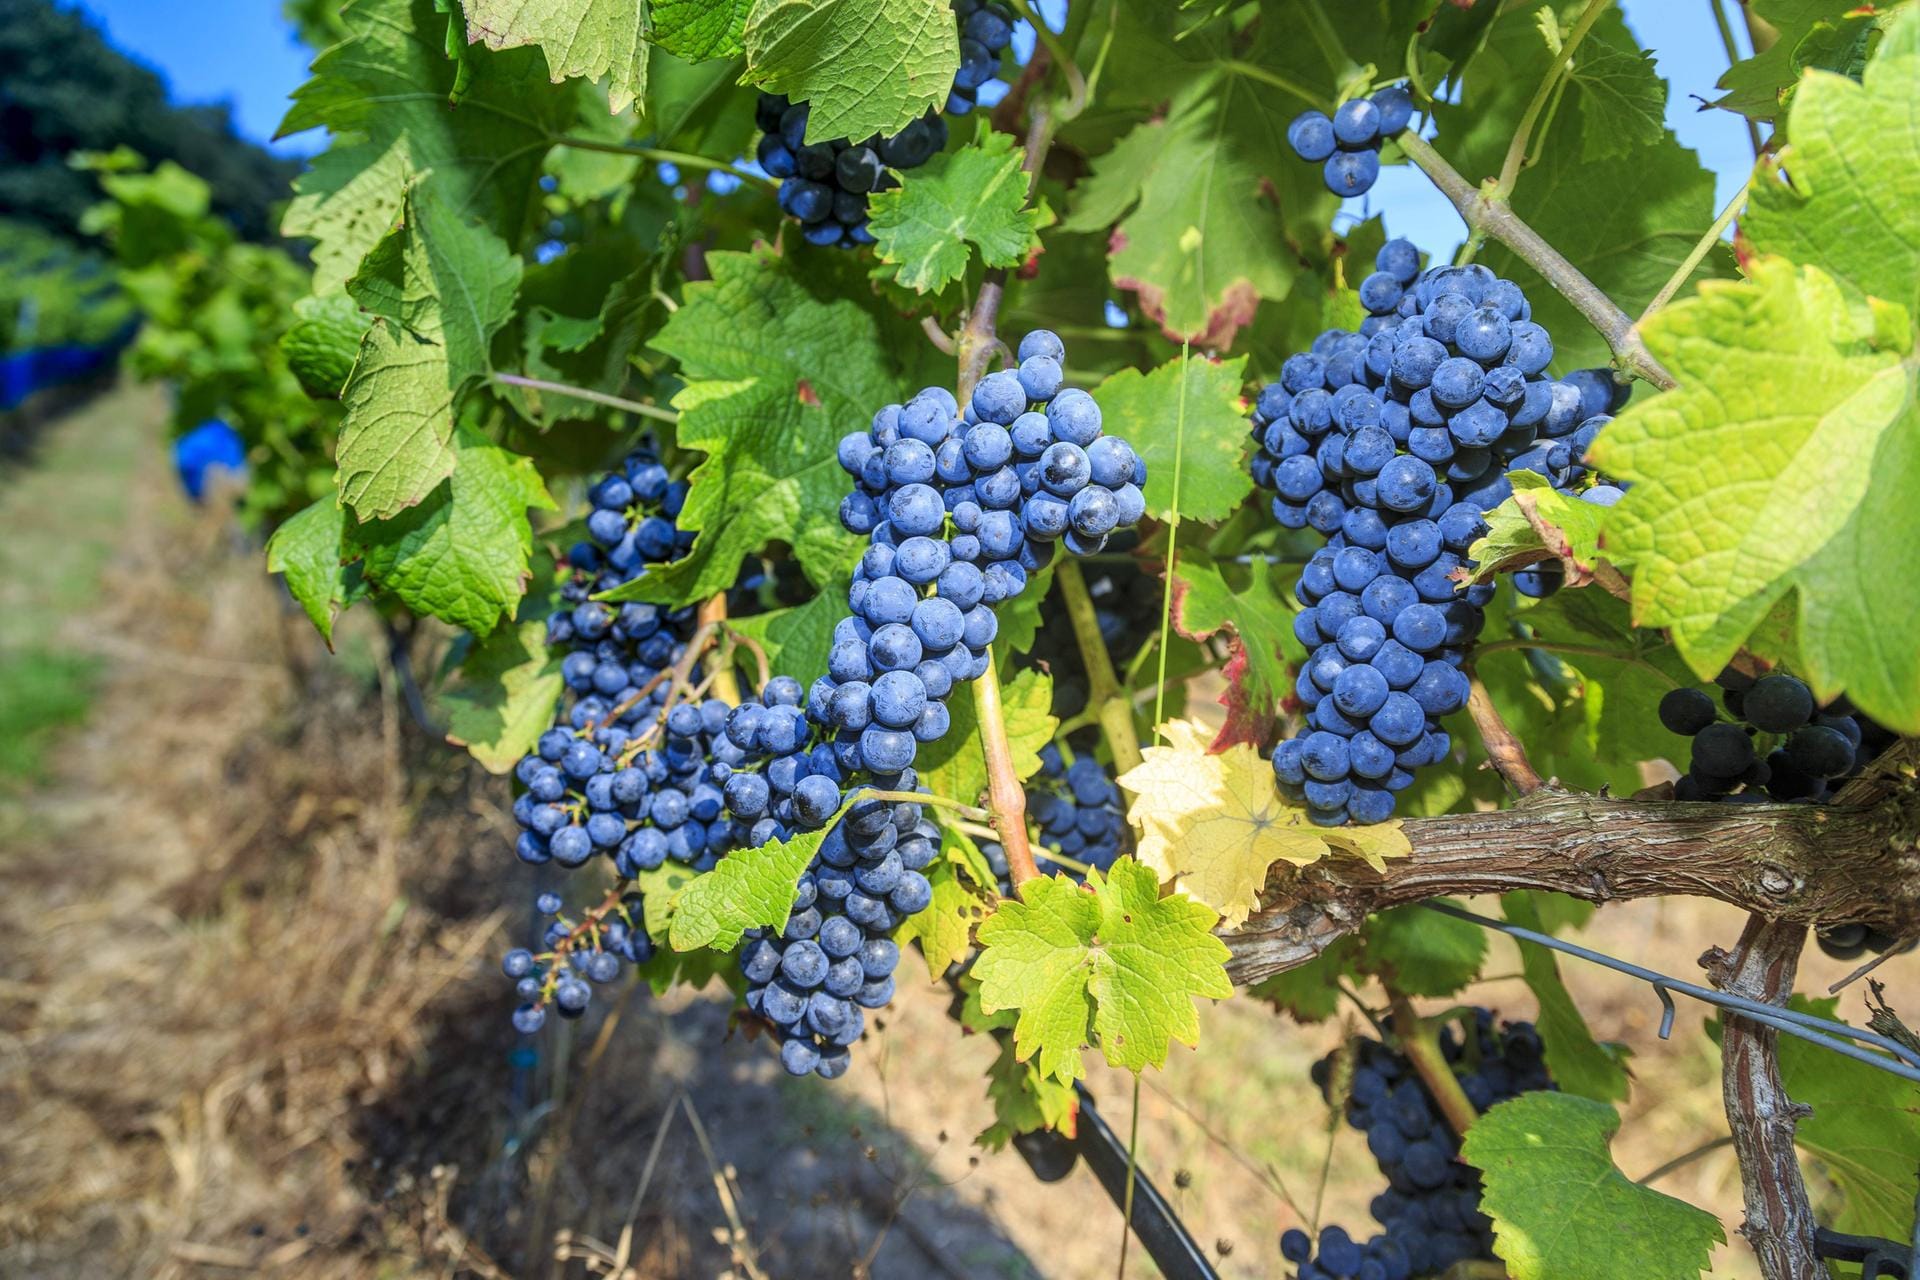 Piwi lautet der Fachbegriff für "pilzwiderstandsfähige Rebsorten". Die Sorten tragen Namen wie Cabernet Cortis oder Regent bei Rotweinen. Johanniter nennt sich eine Sorte bei den Weißweinen.